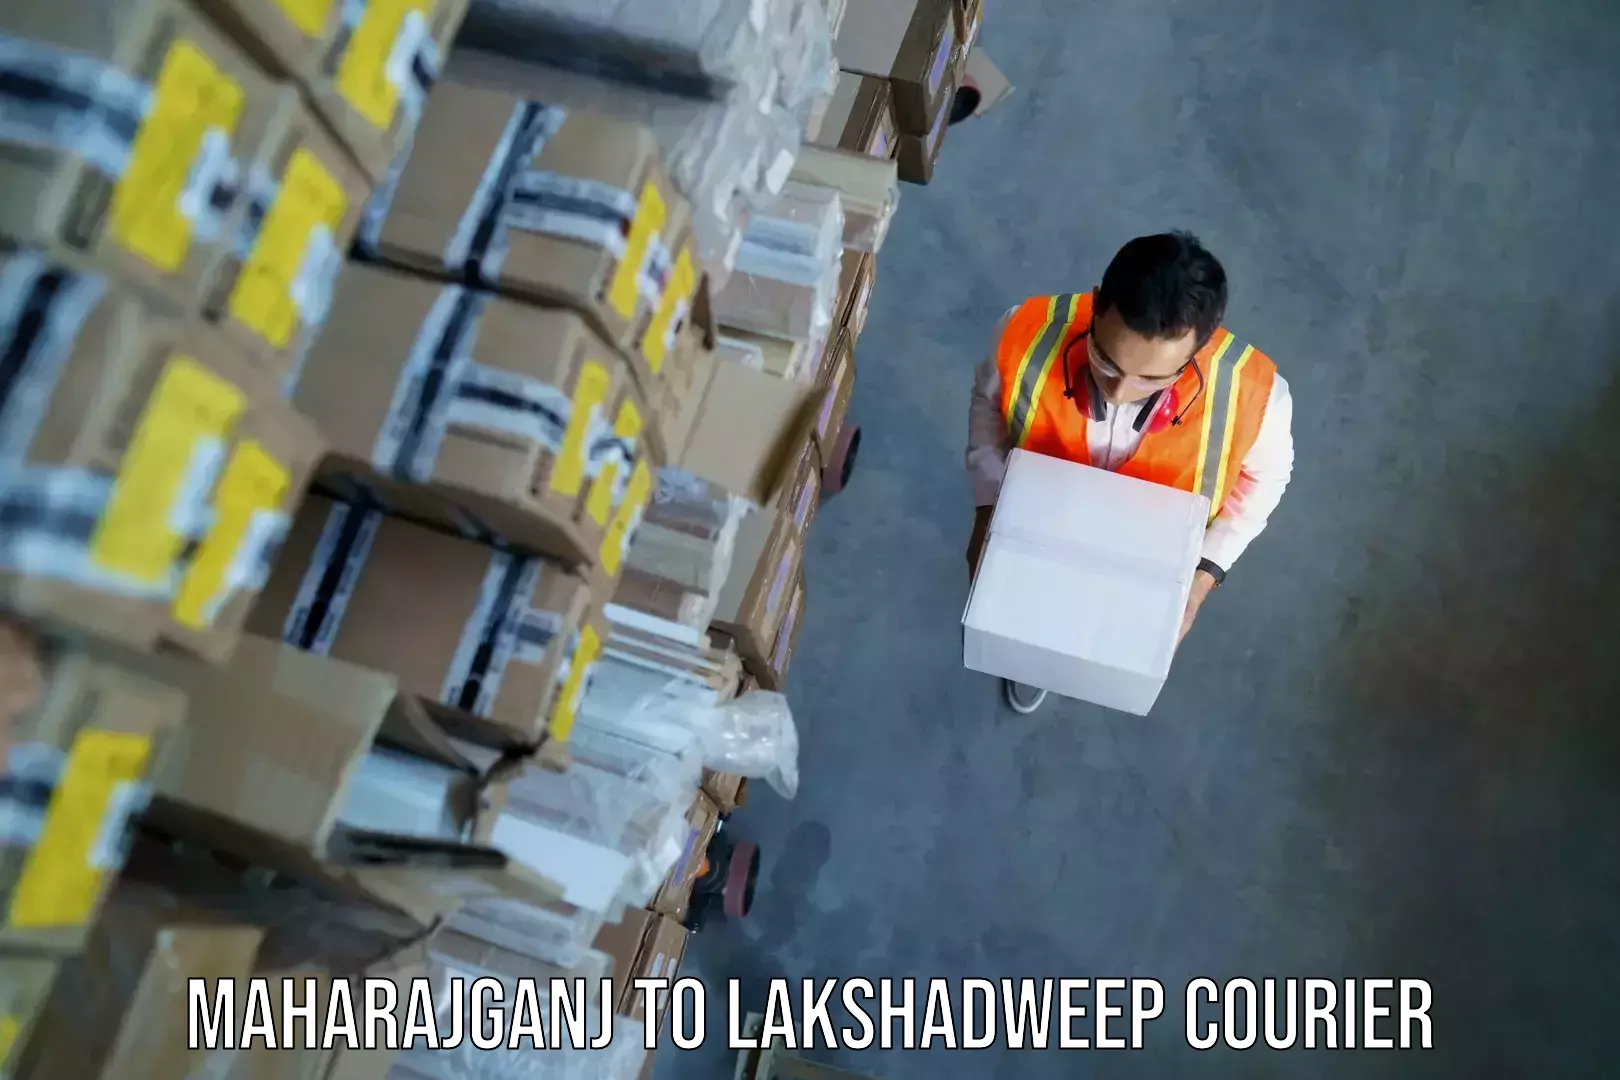 Baggage transport scheduler Maharajganj to Lakshadweep